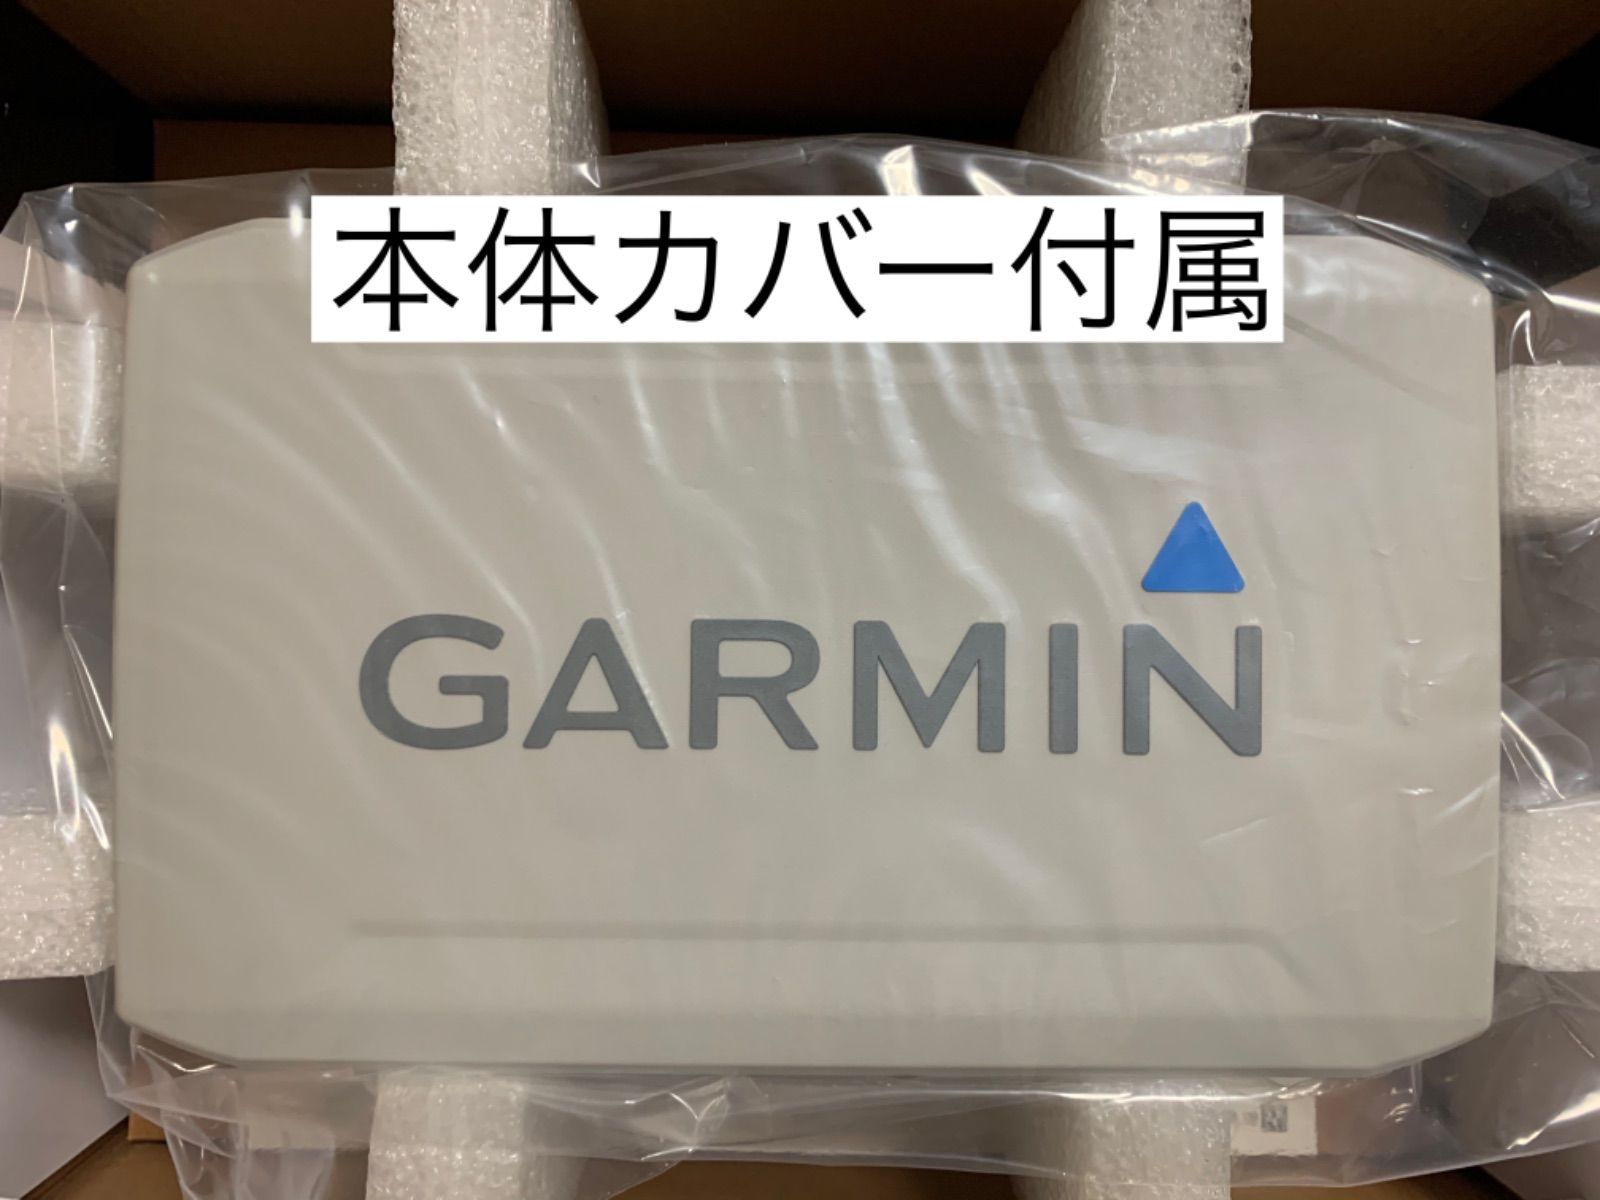 ガーミン エコマップUHD7インチ+GT56UDH-TM振動子セット - SUNマリン 